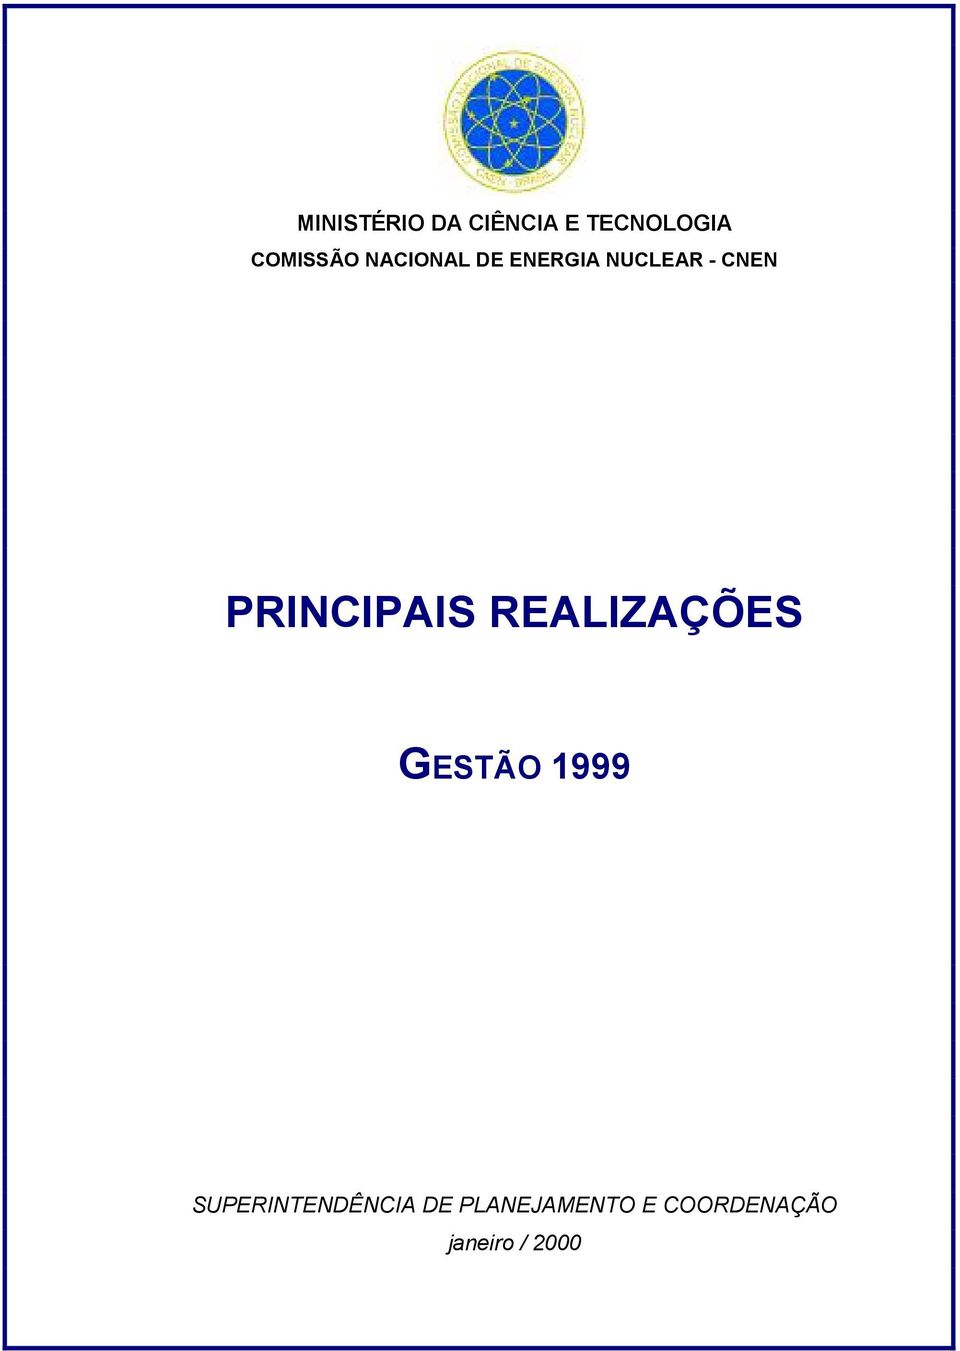 PRINCIPAIS REALIZAÇÕES GESTÃO 1999